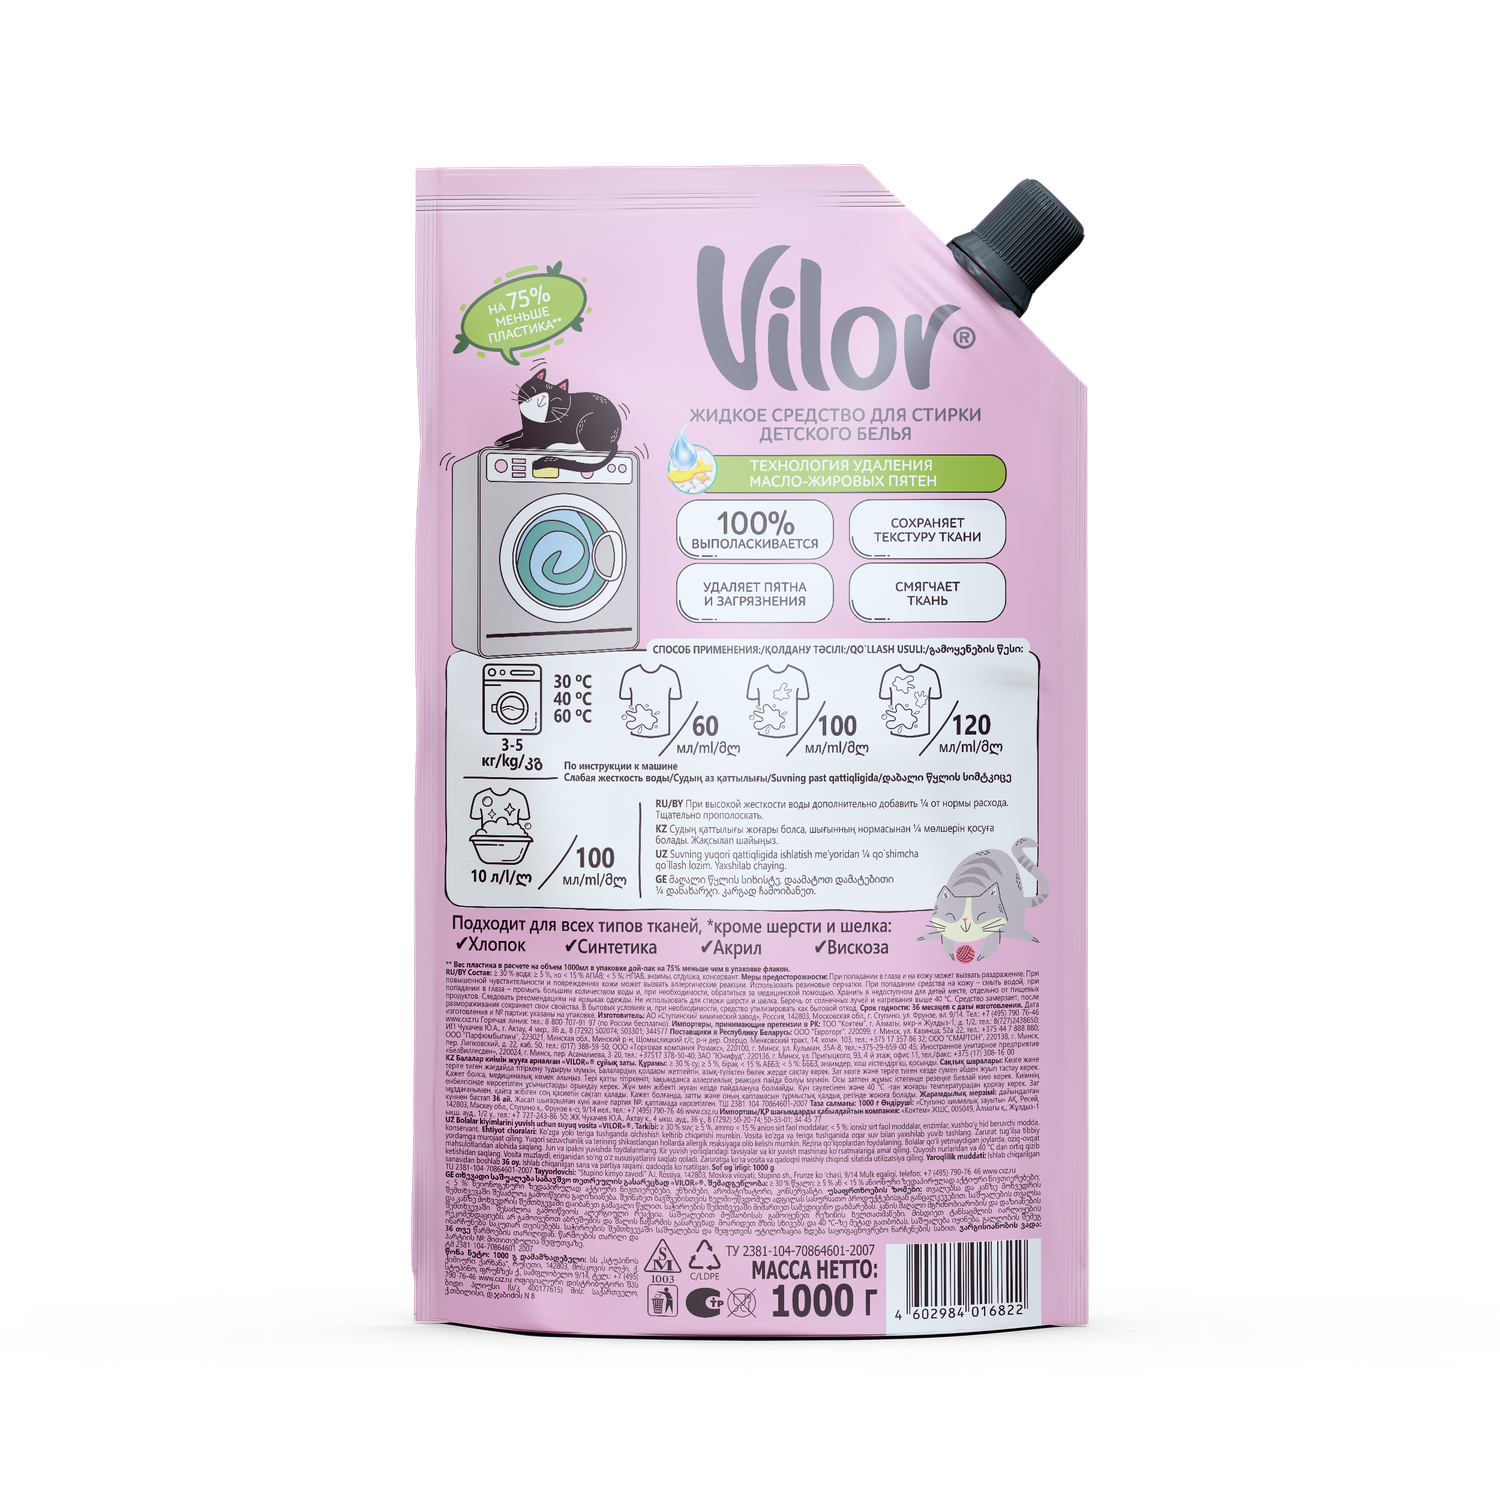 Жидкое средство Vilor для стирки детского белья 1000 г - фото 2